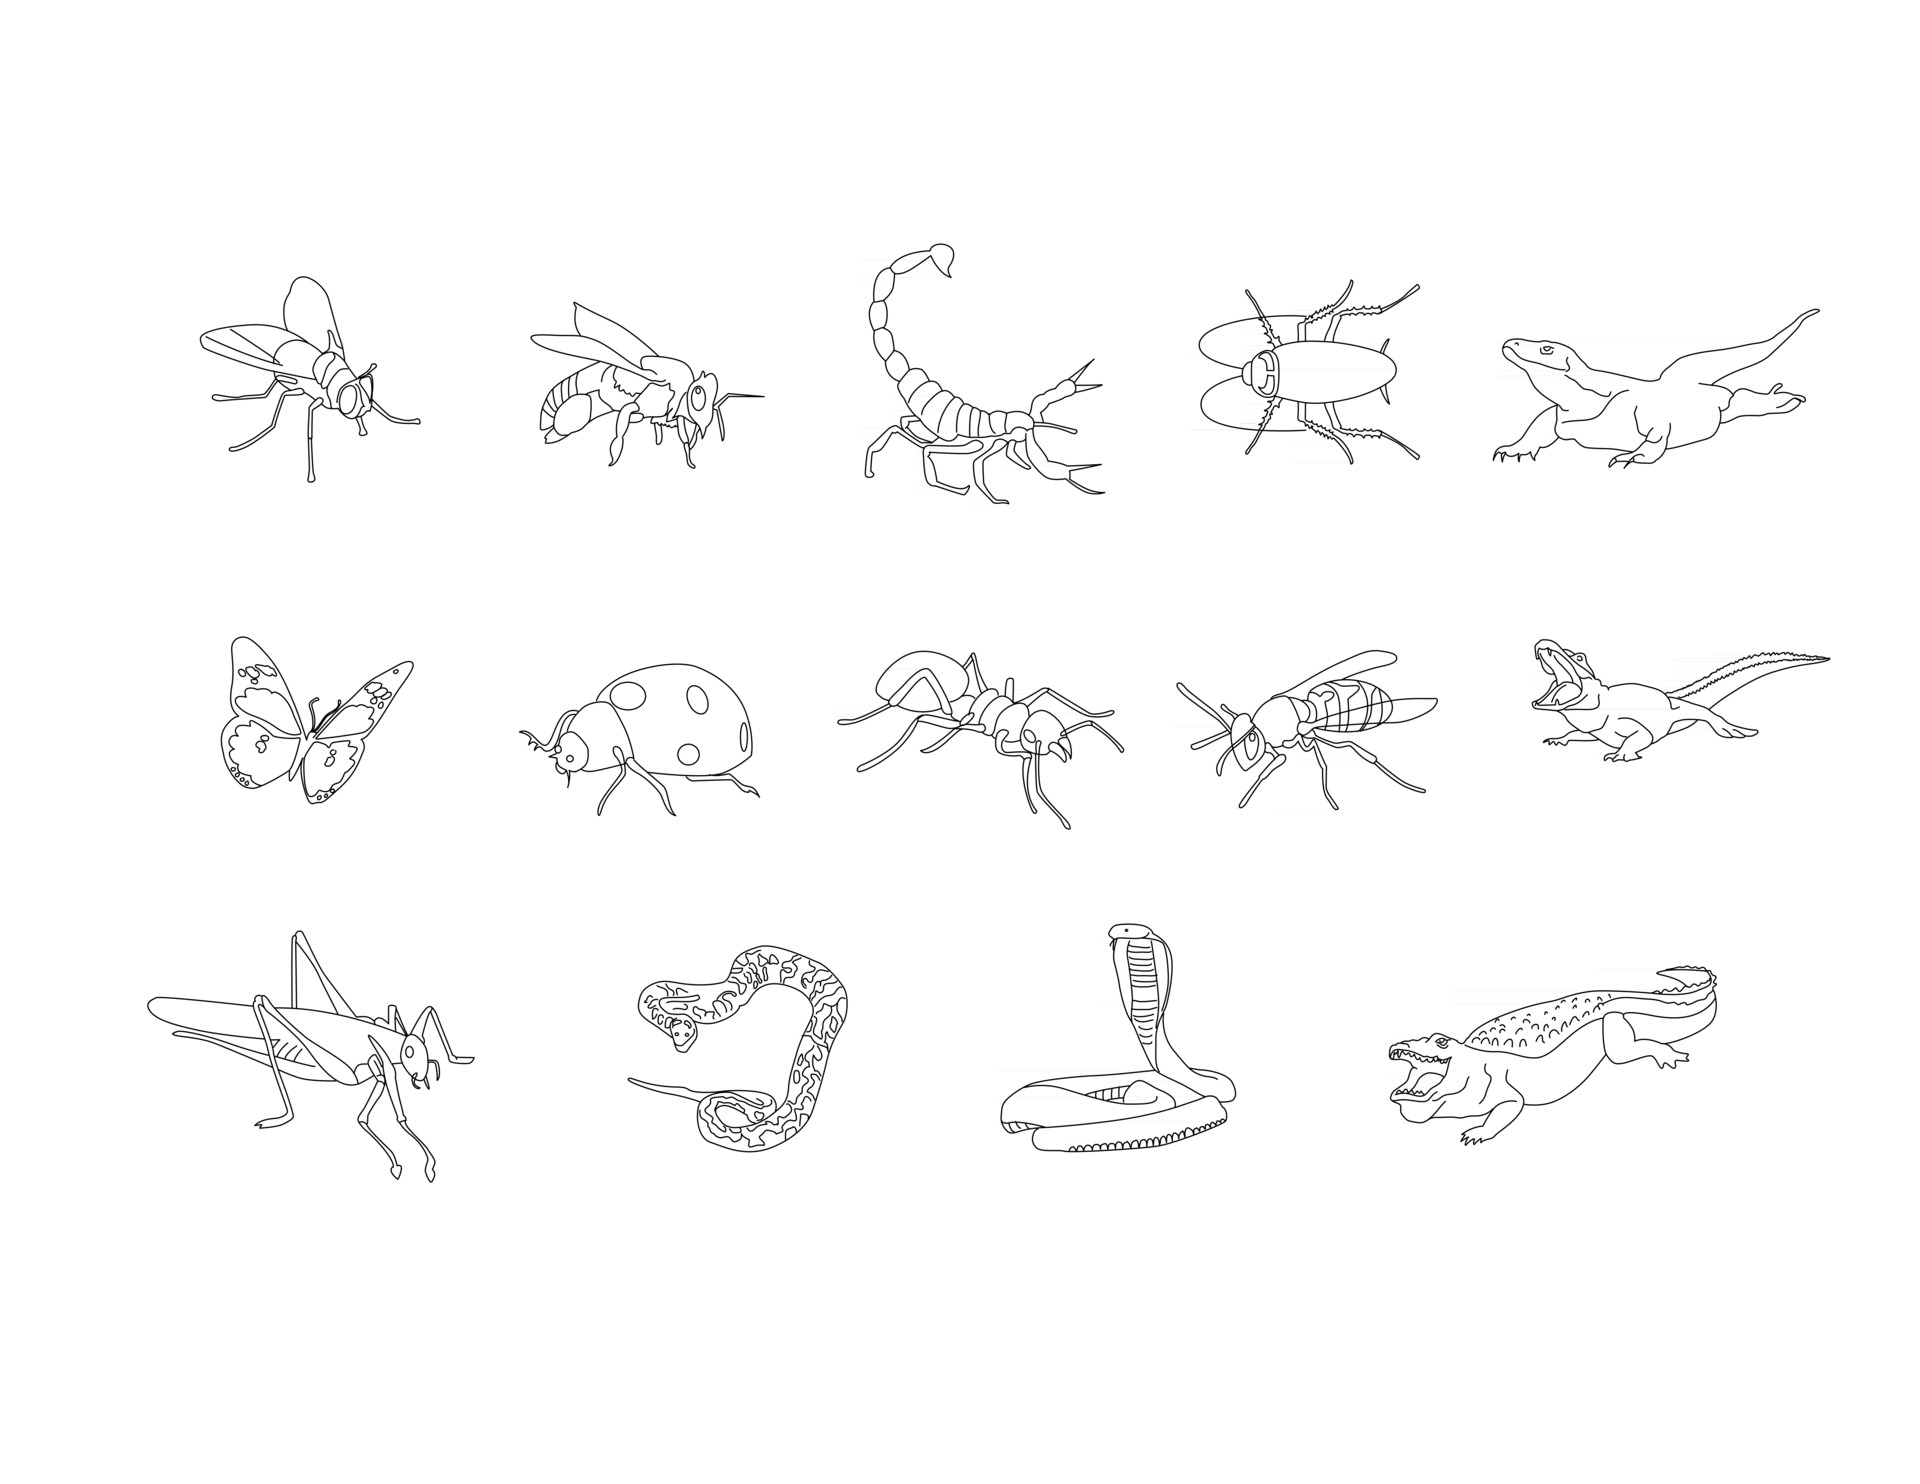 insectos, reptiles anfibios dibujo lineal conjunto de imágenes prediseñadas  3061063 Vector en Vecteezy